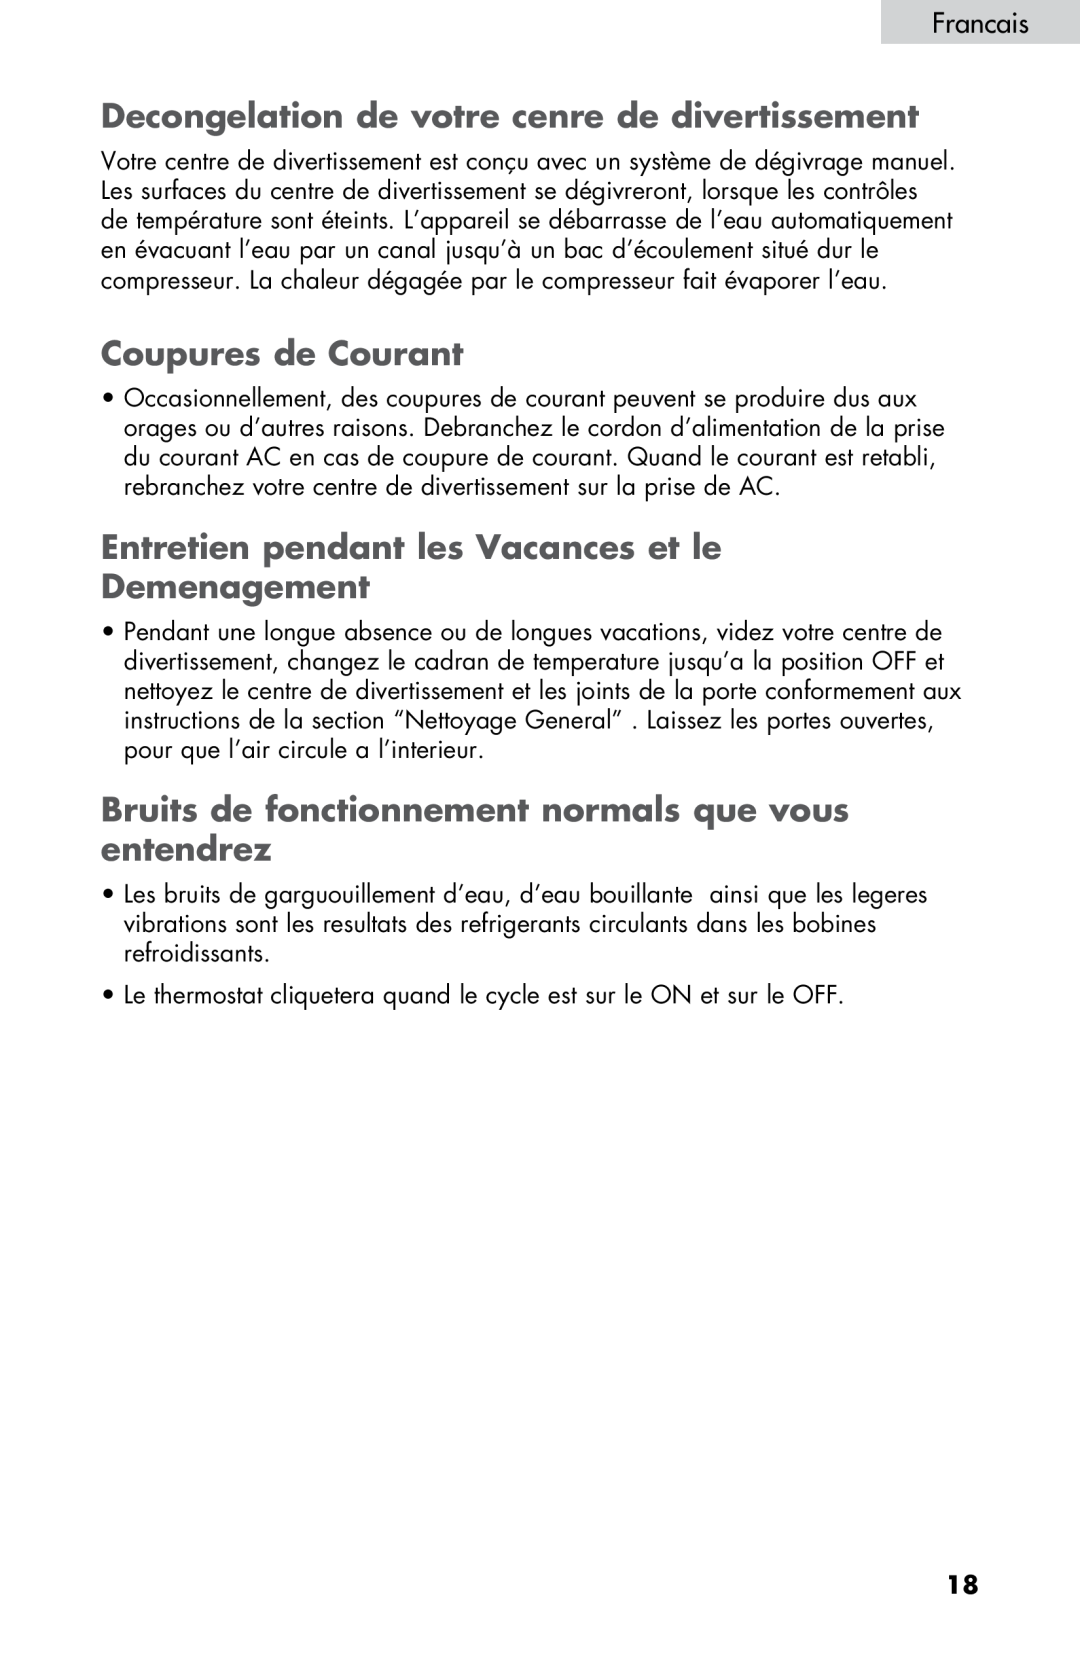 Haier ZHBCN05FVS user manual Decongelation de votre cenre de divertissement, Coupures de Courant, Francais 